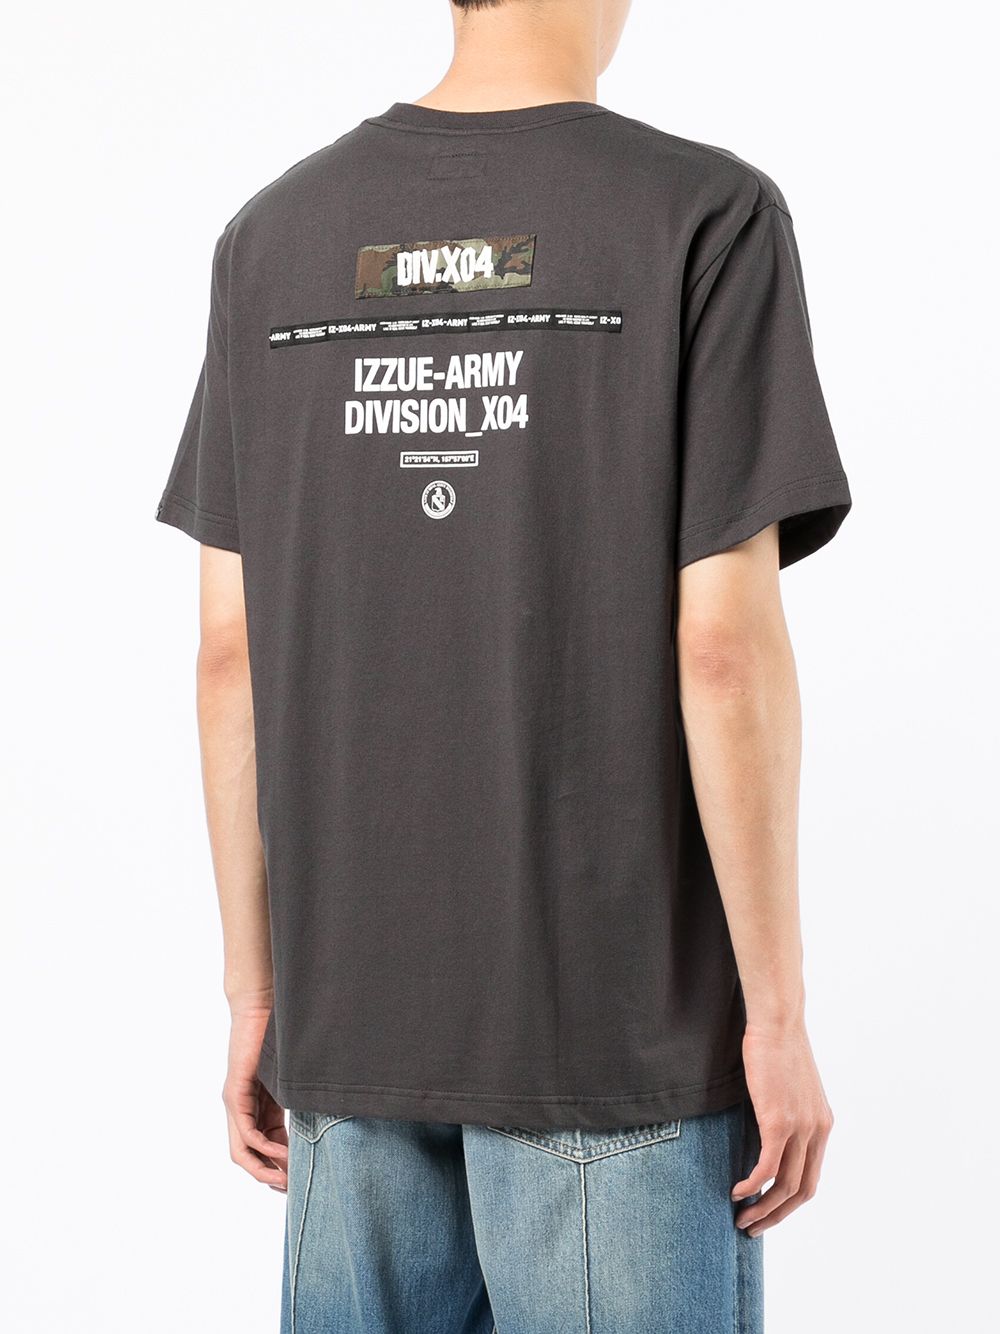 фото Izzue футболка army division